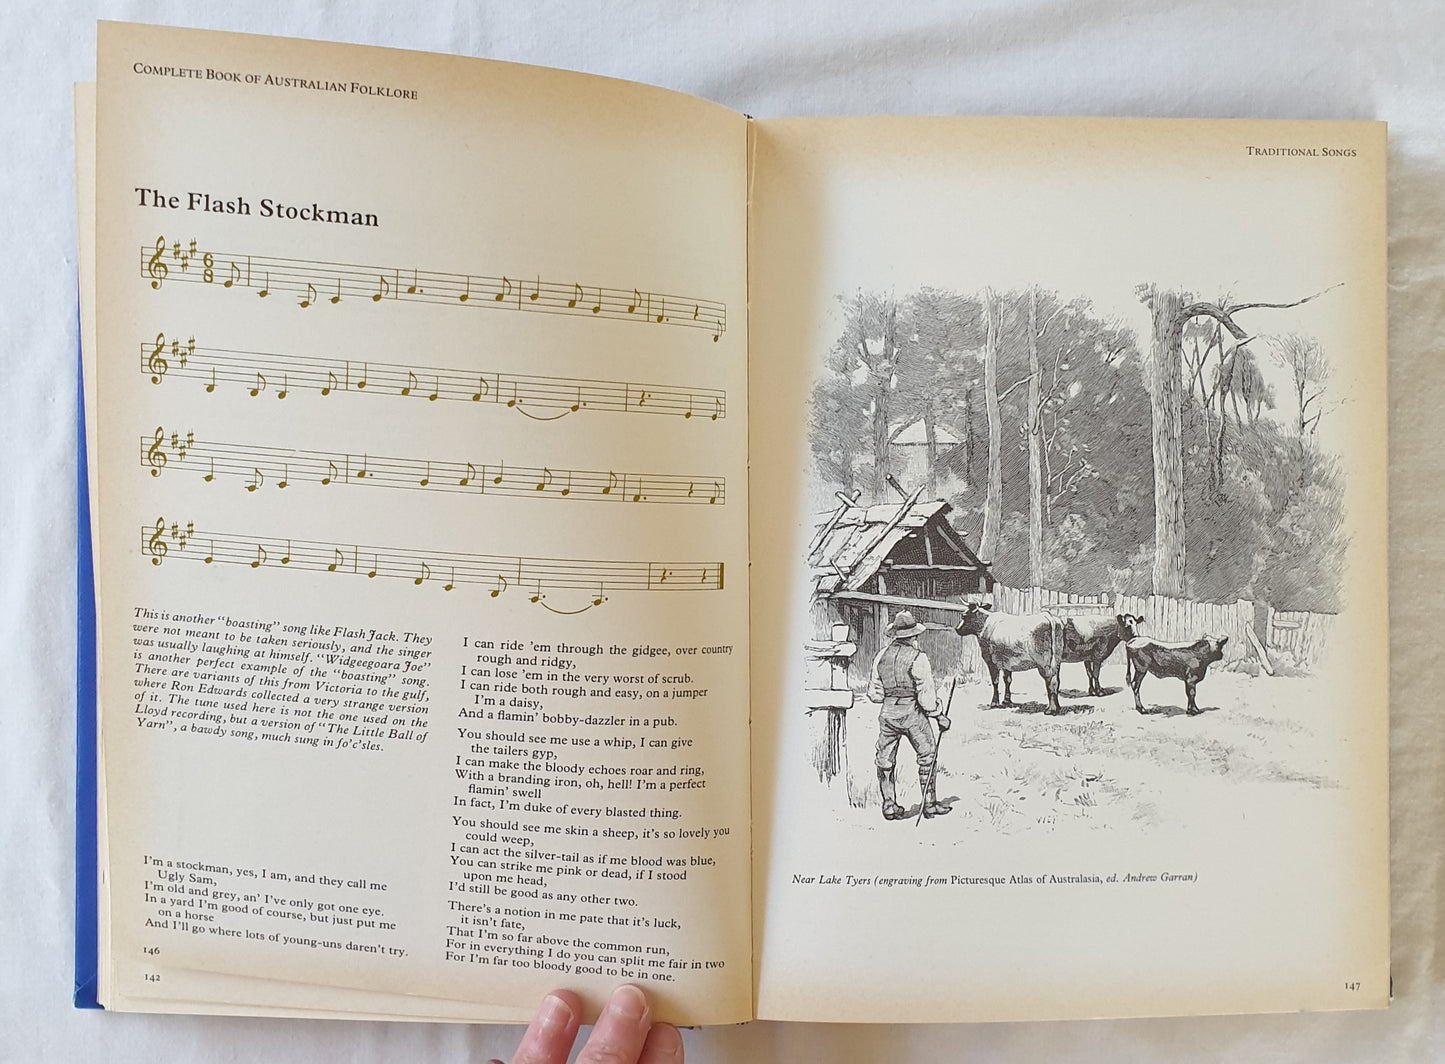 Complete Book of Australian Folk Lore by Bill Scott